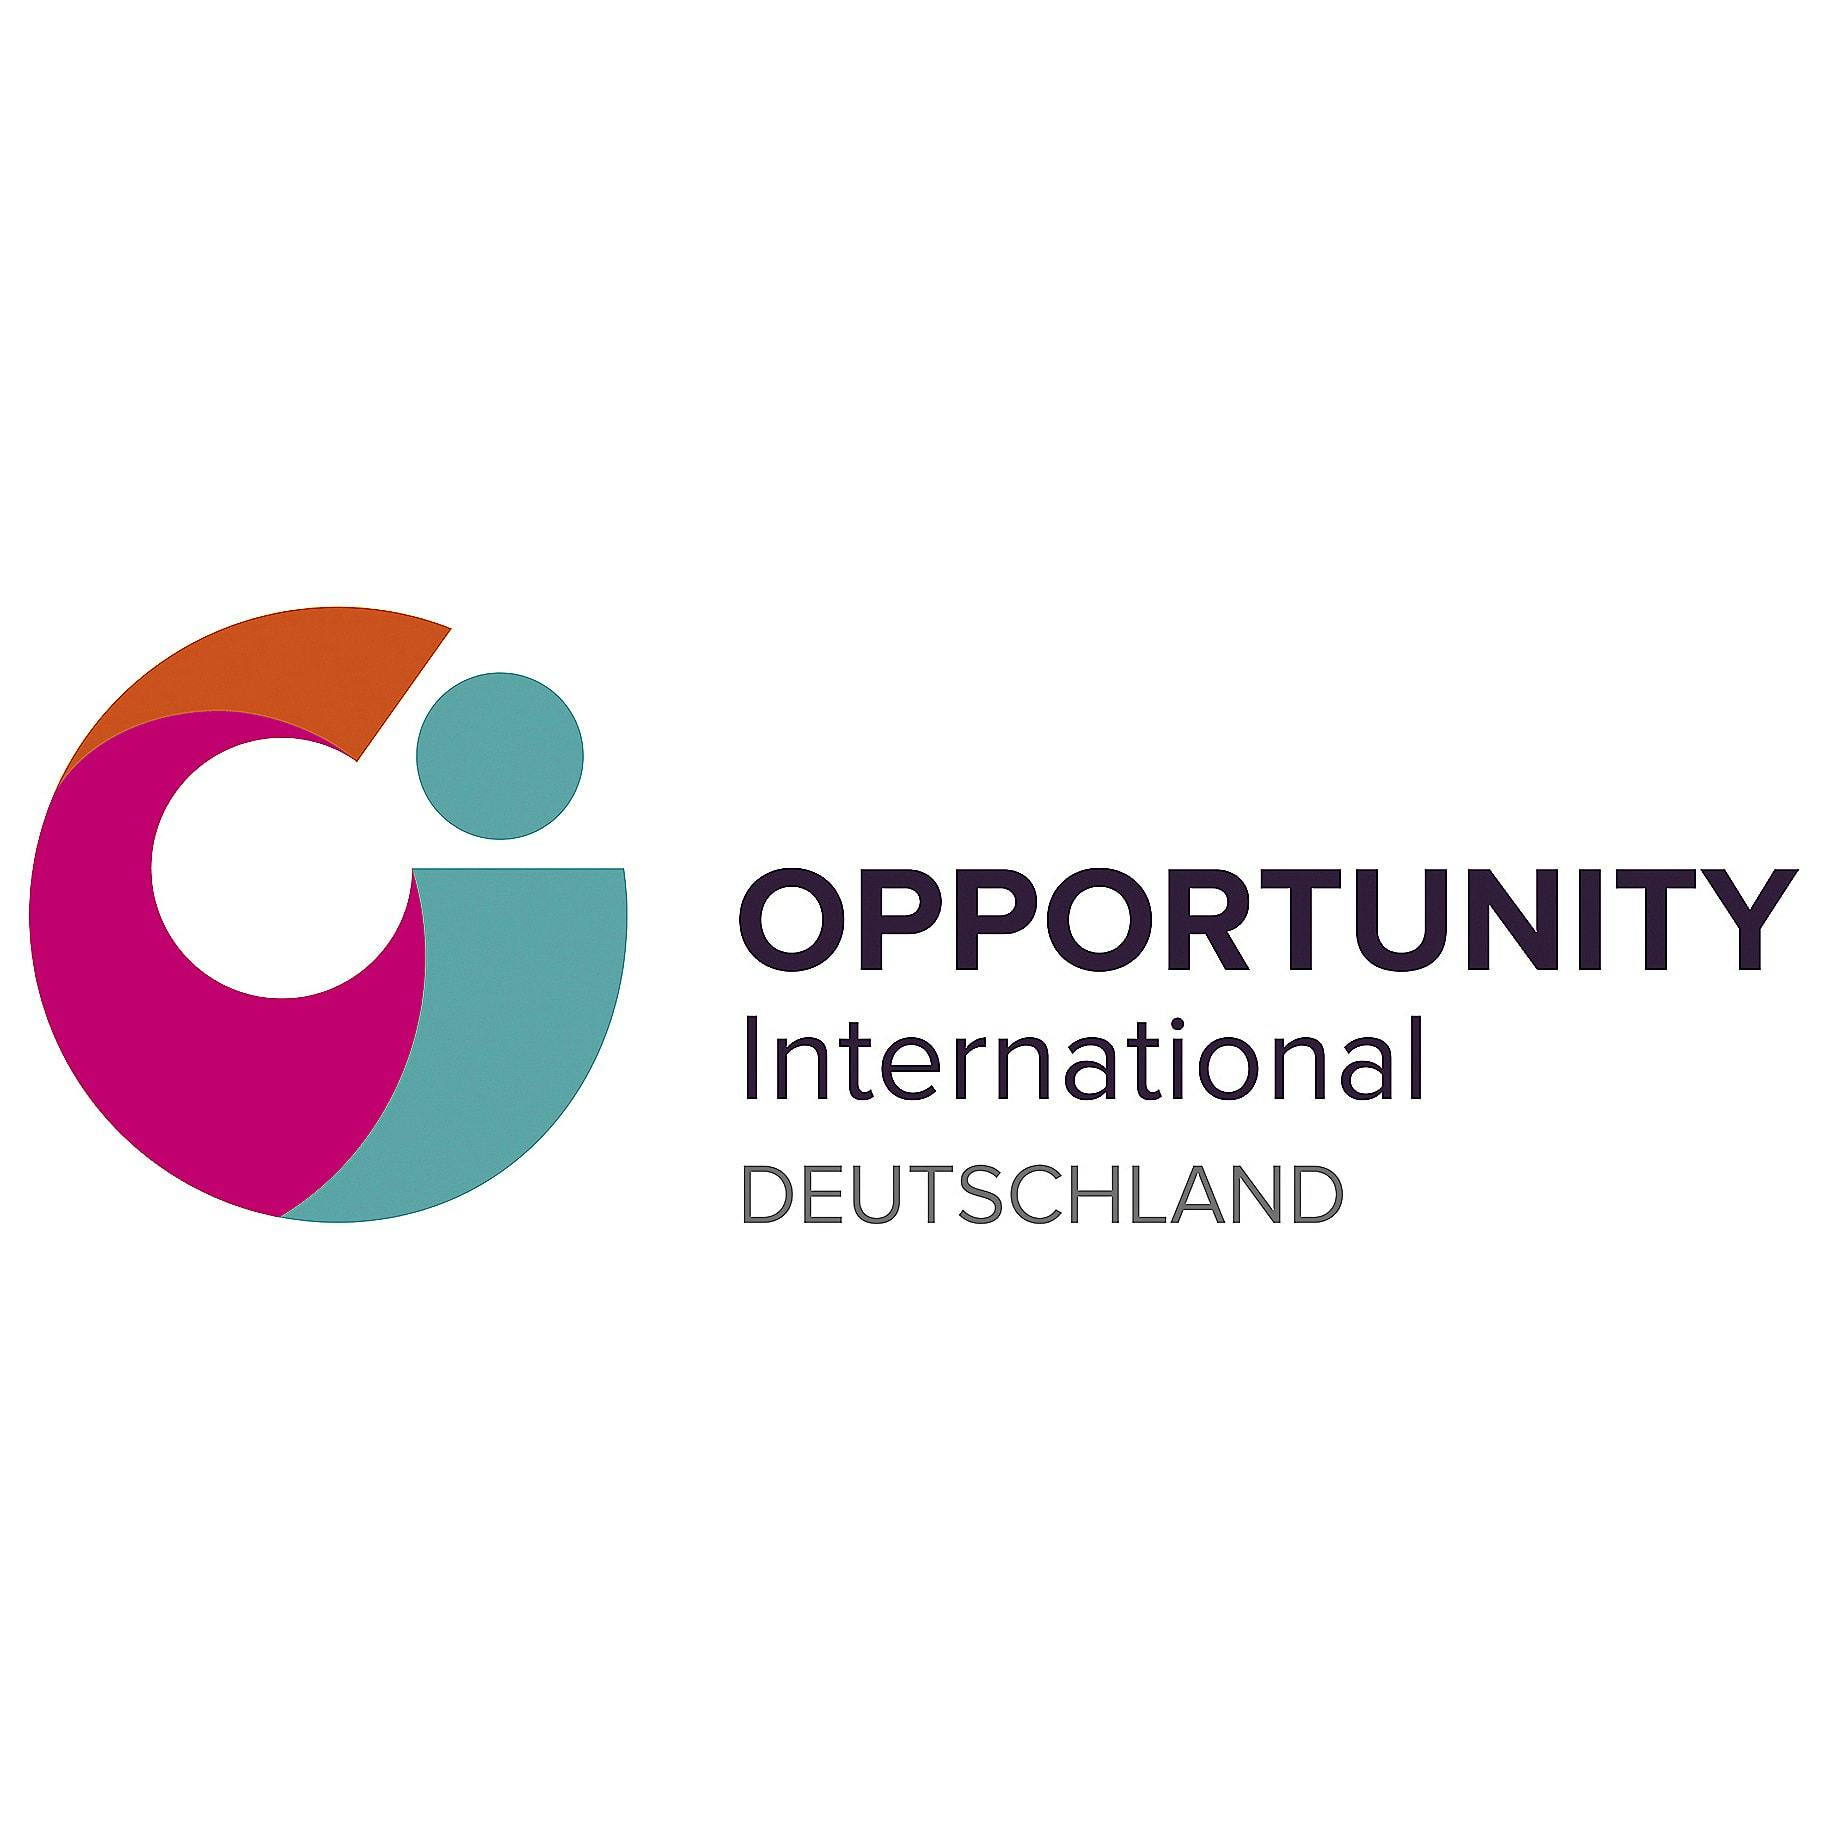 Opportunity International Deutschland logo